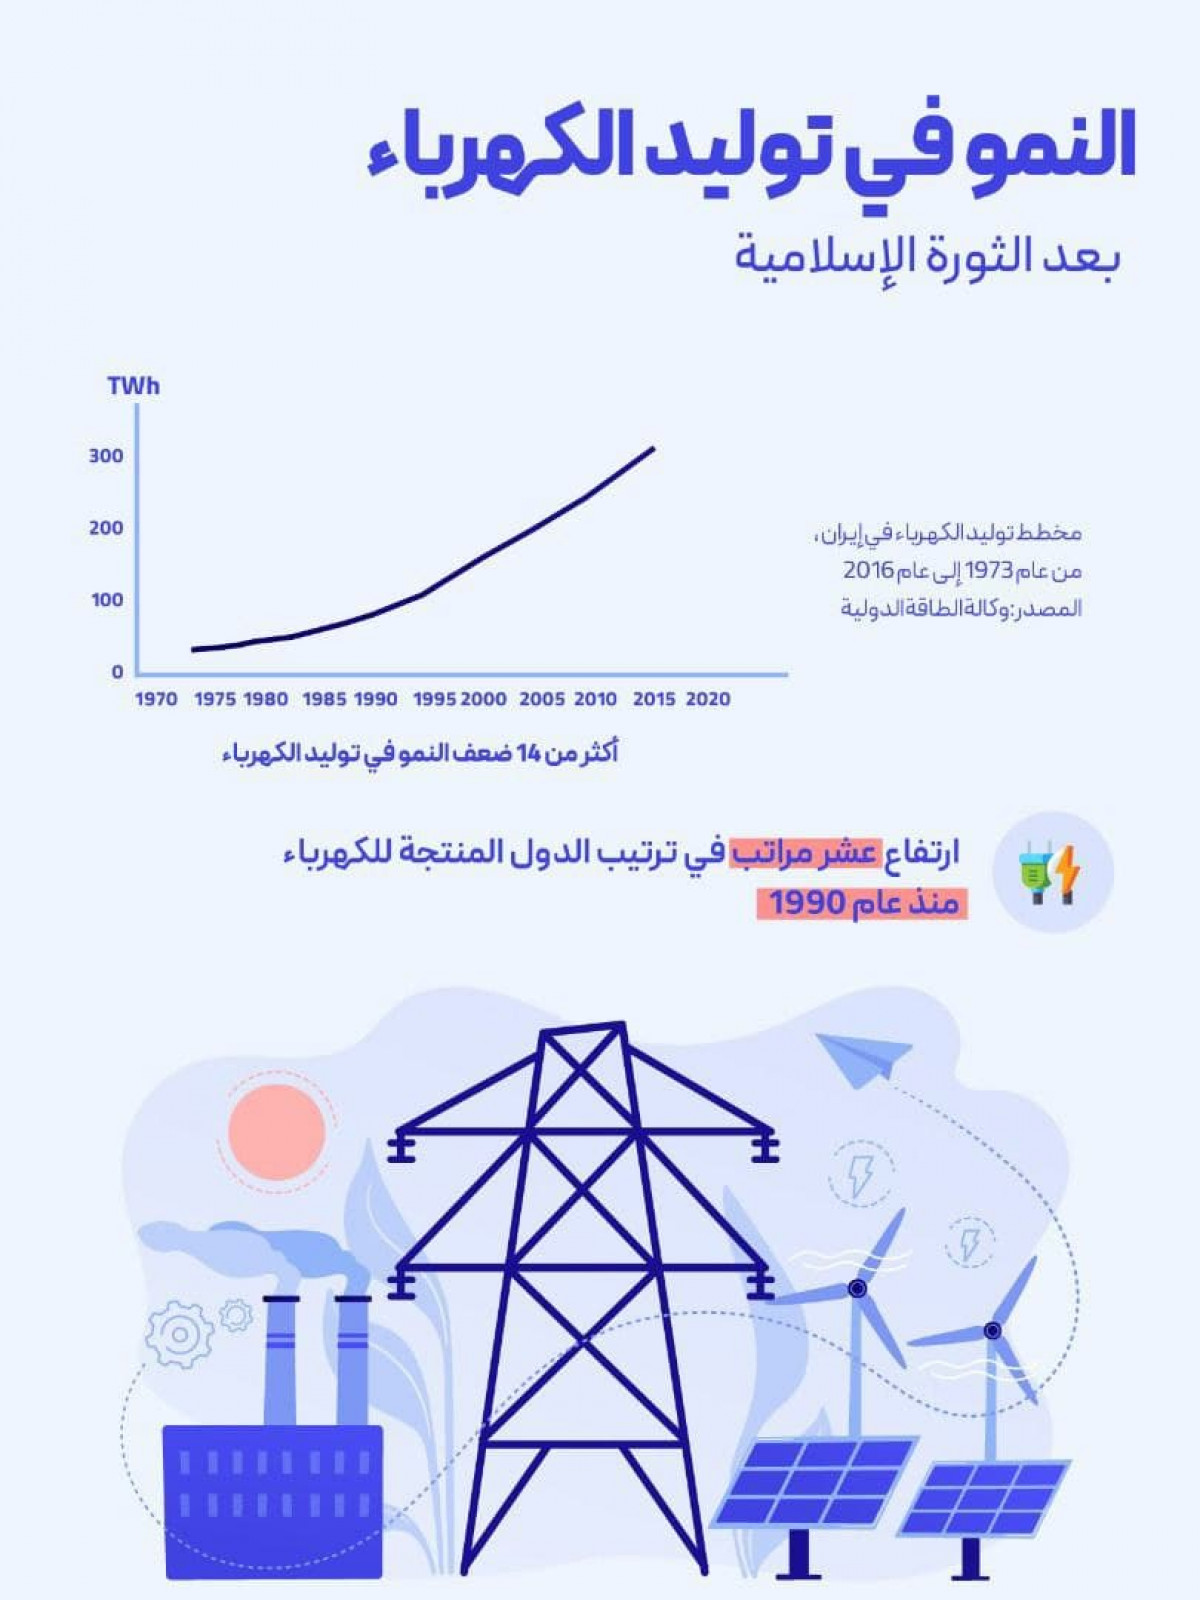 النمو في توليد الكهرباء بعد الثورة الإسلامية